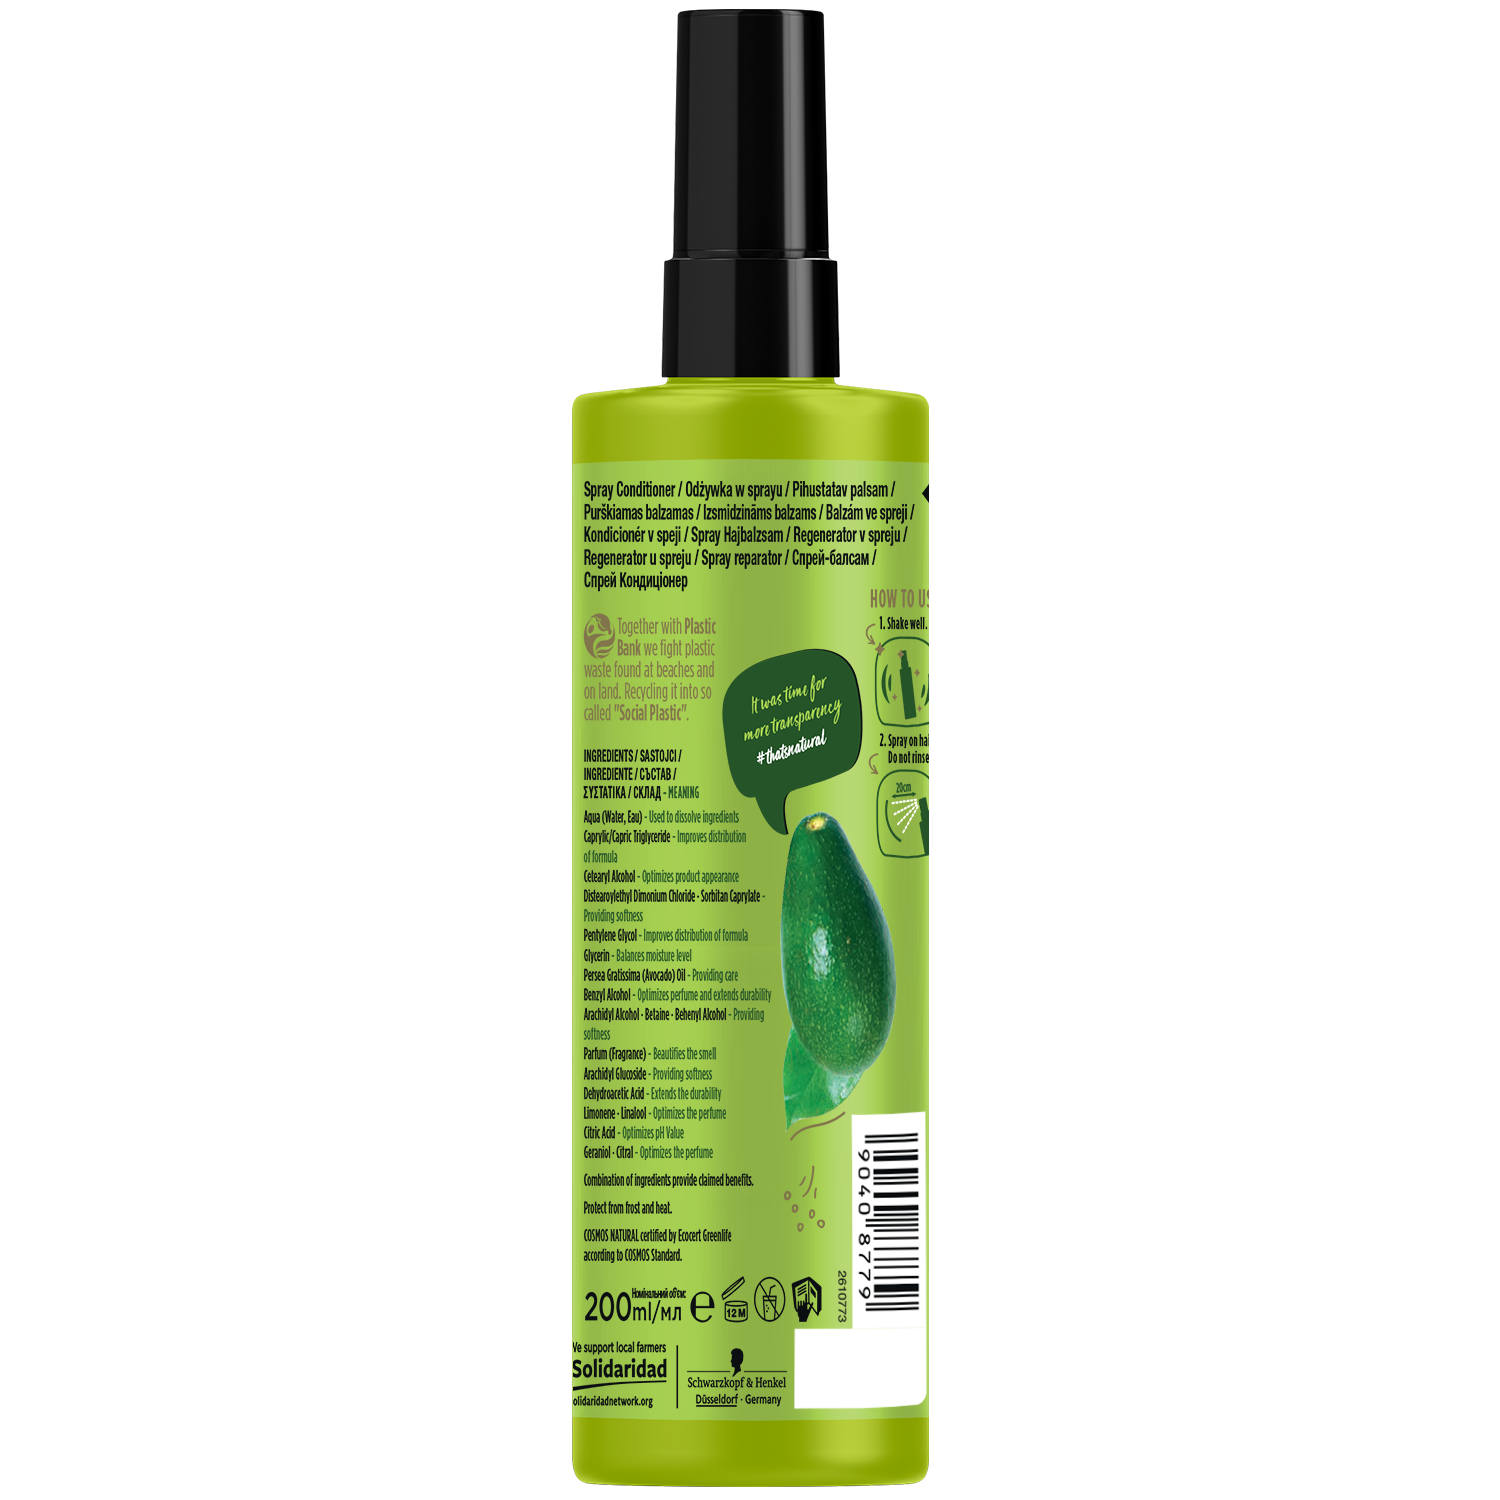 Экспресс-кондиционер Nature Box для восстановления волос и против секущихся кончиков, с маслом авокадо холодного отжима, 200 мл - фото 2